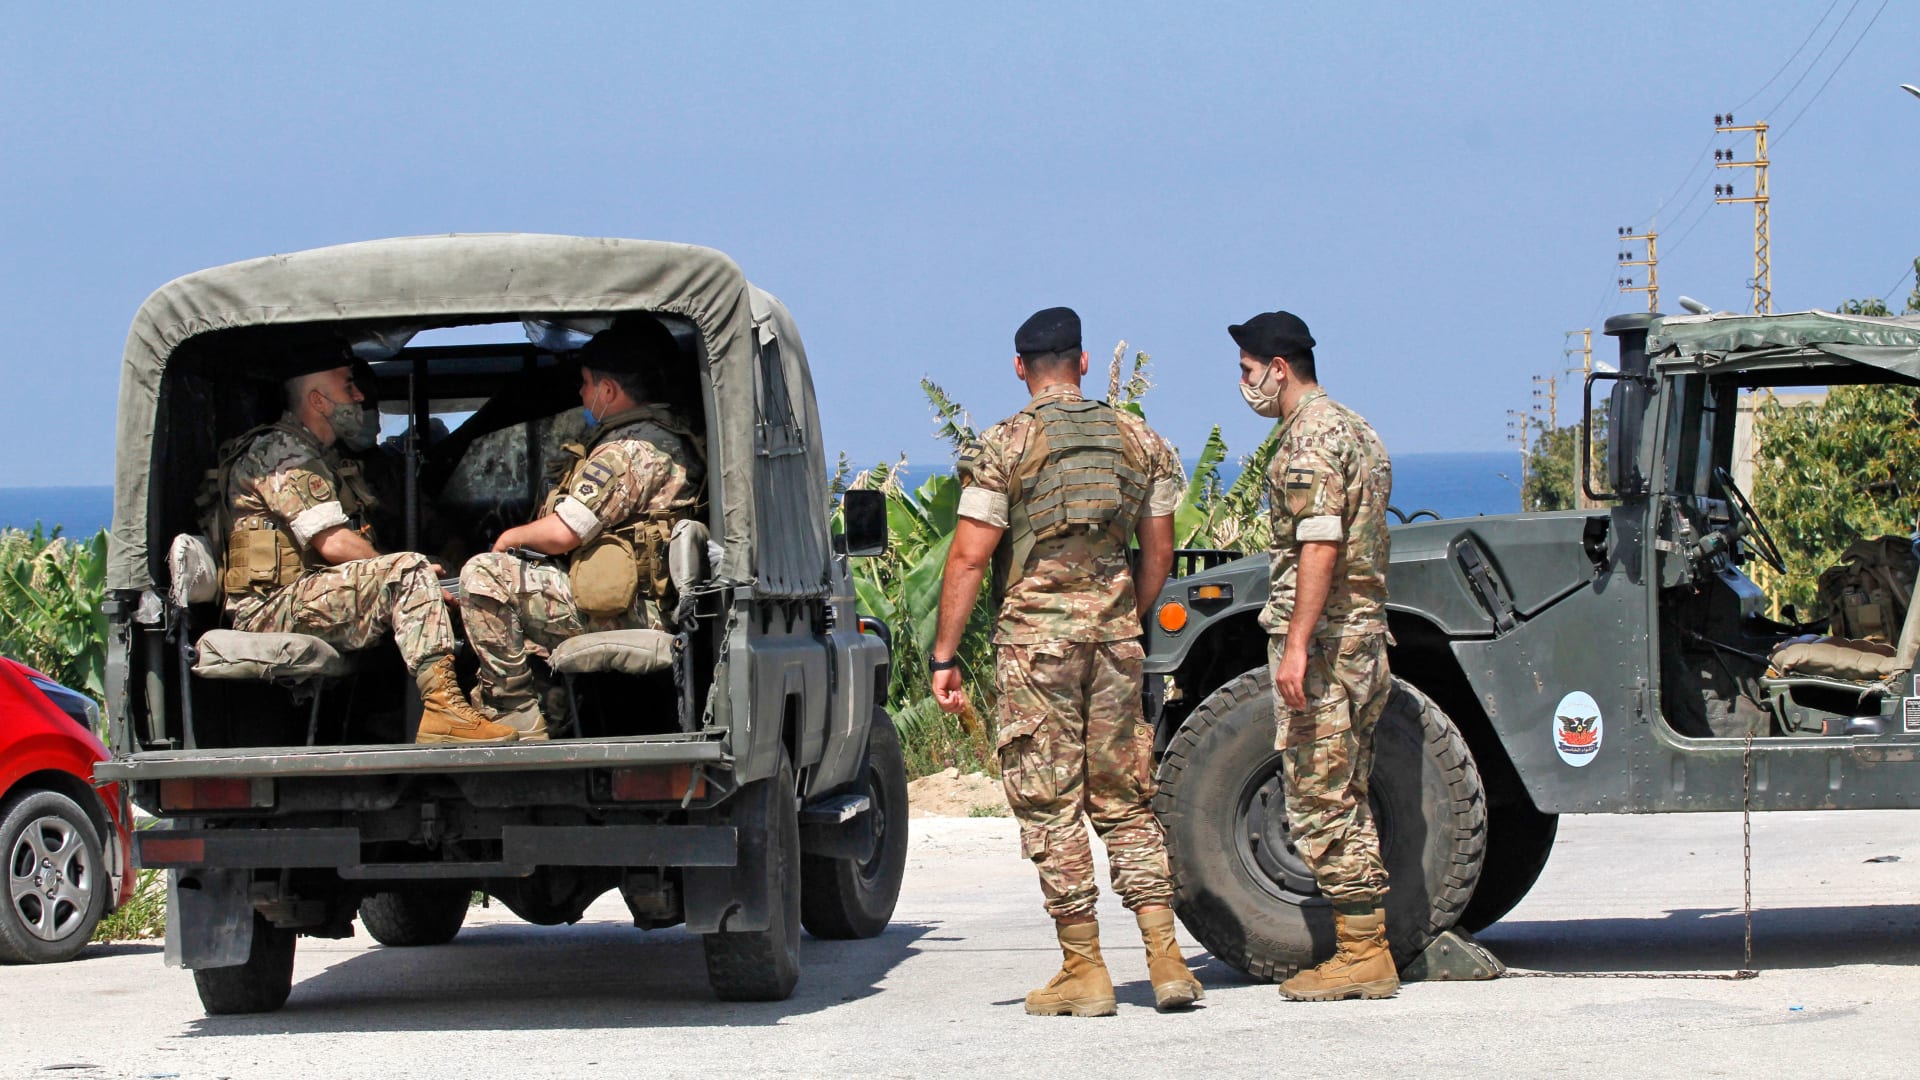 الجيش اللبناني يعتمد بشكل كبير على المساعدات العسكرية الأمريكية